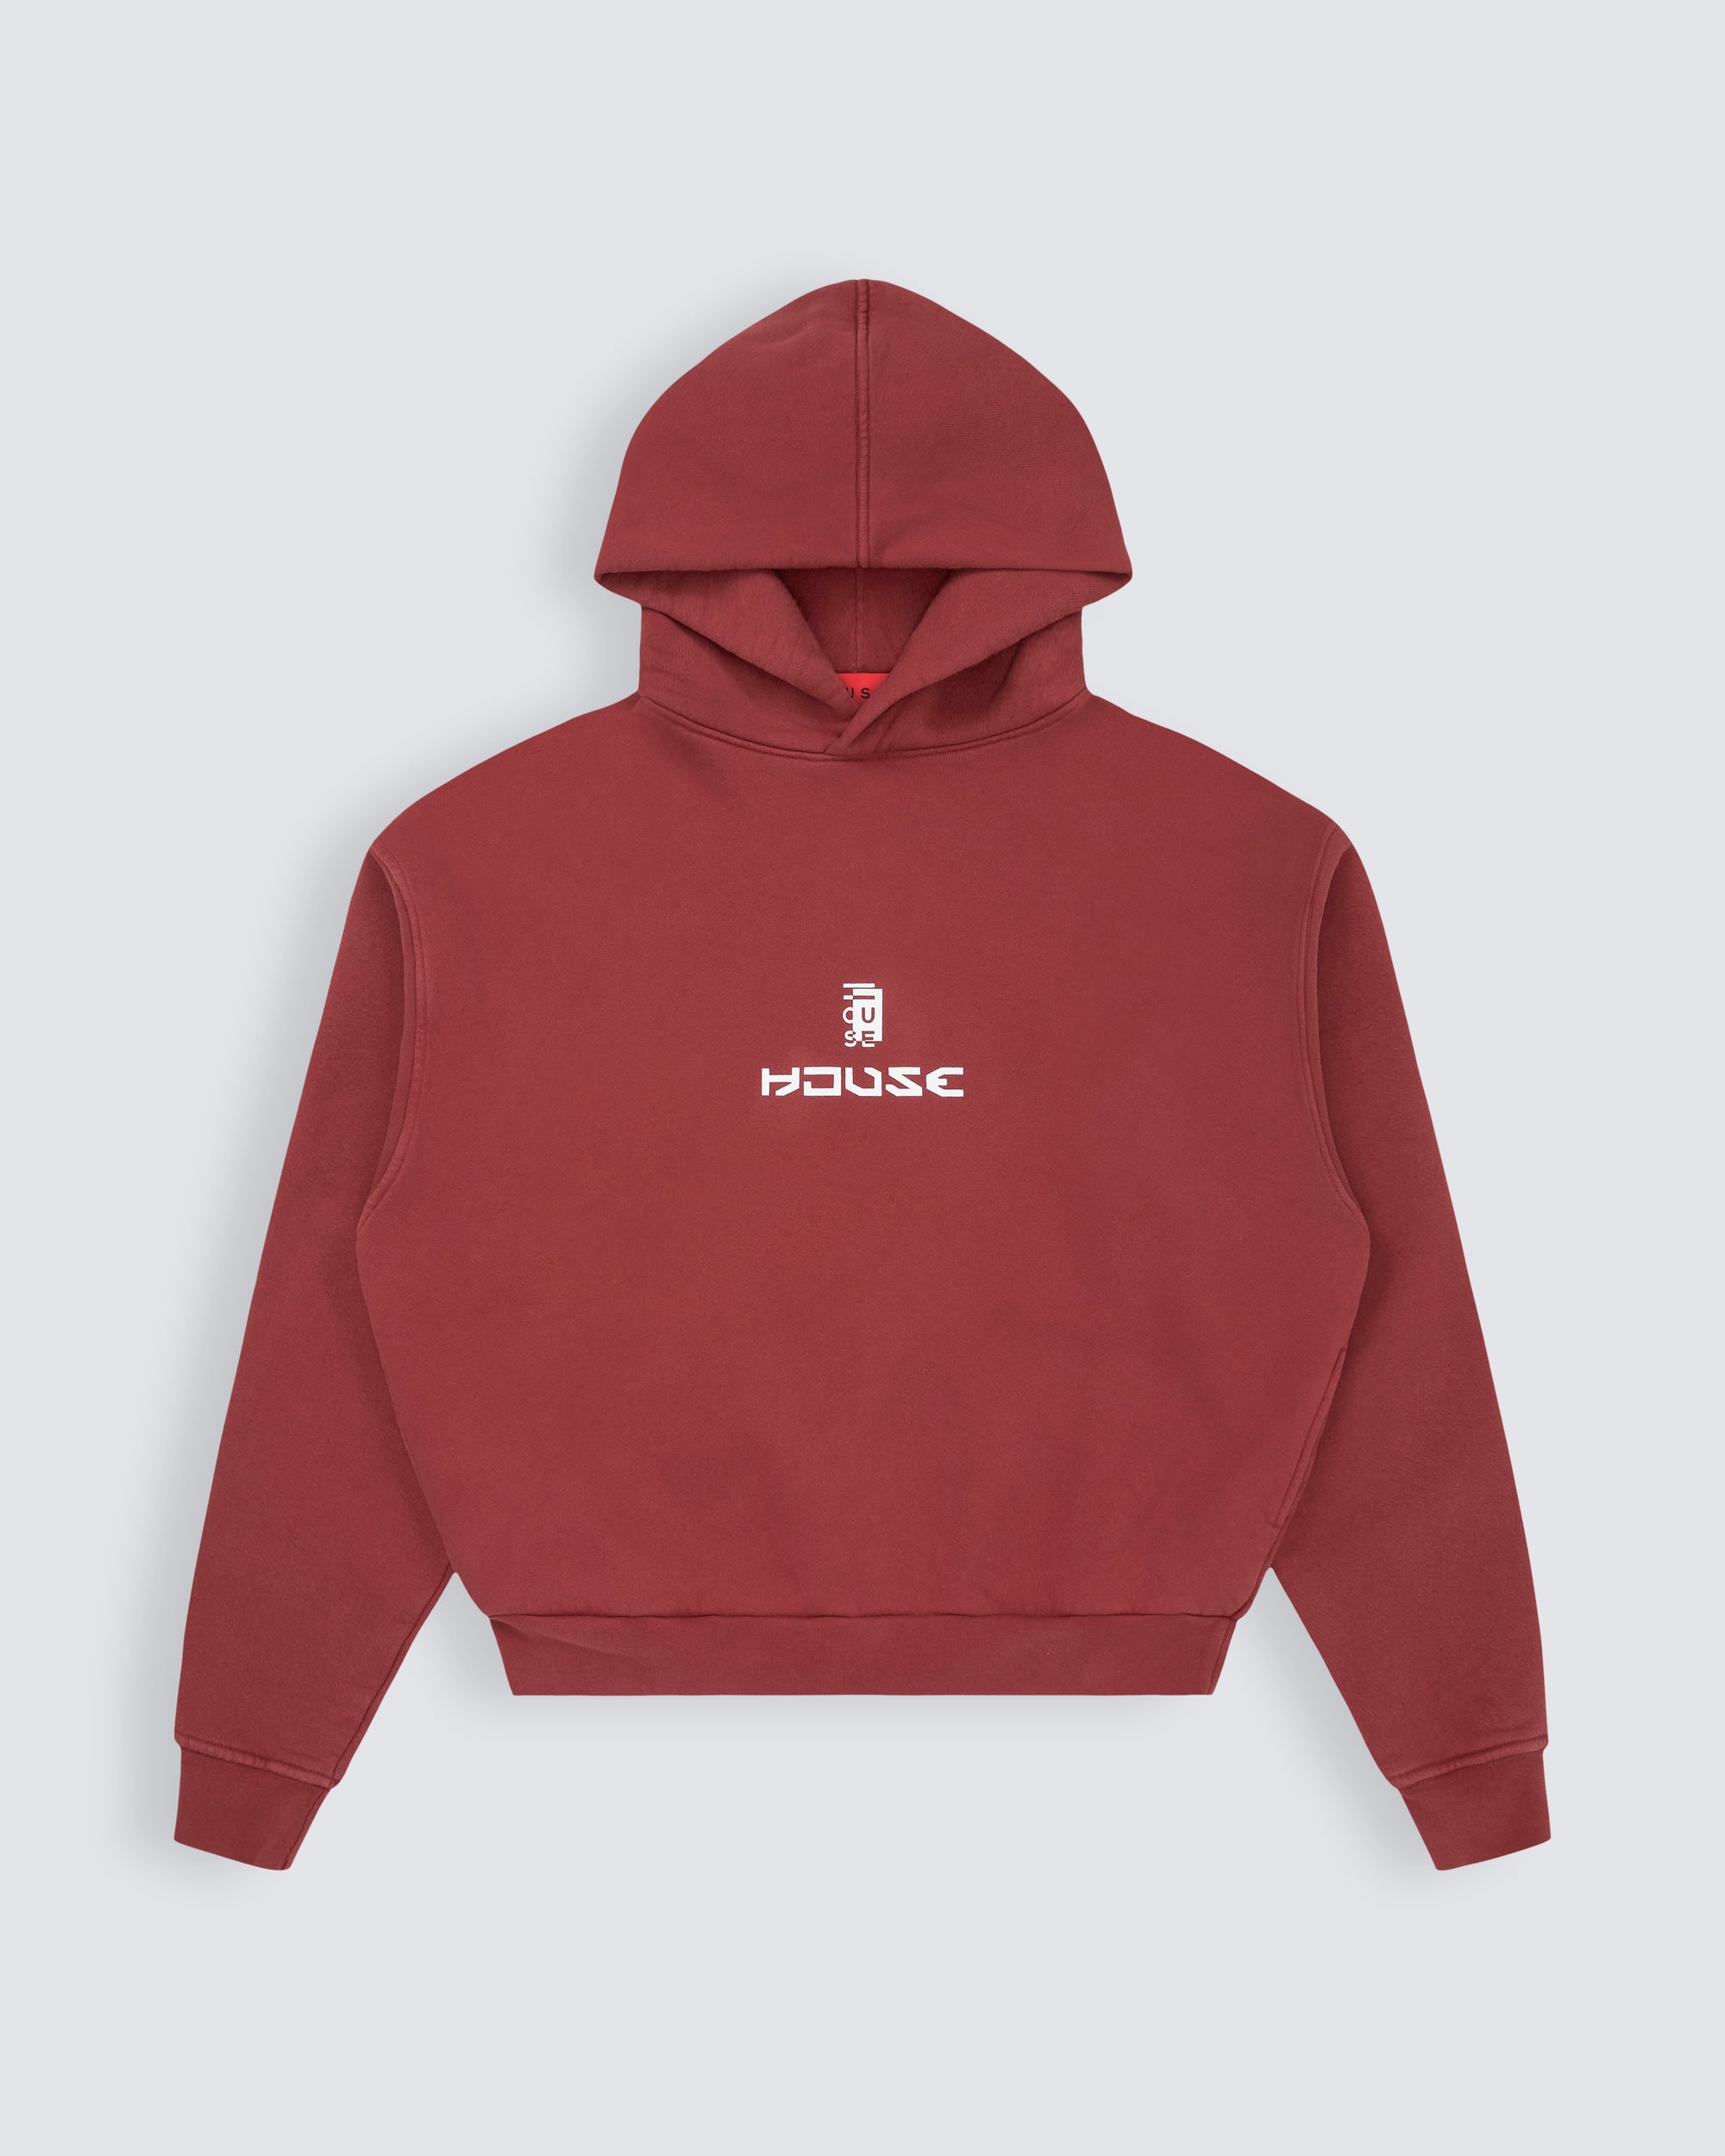 House iD hoodie in mars red